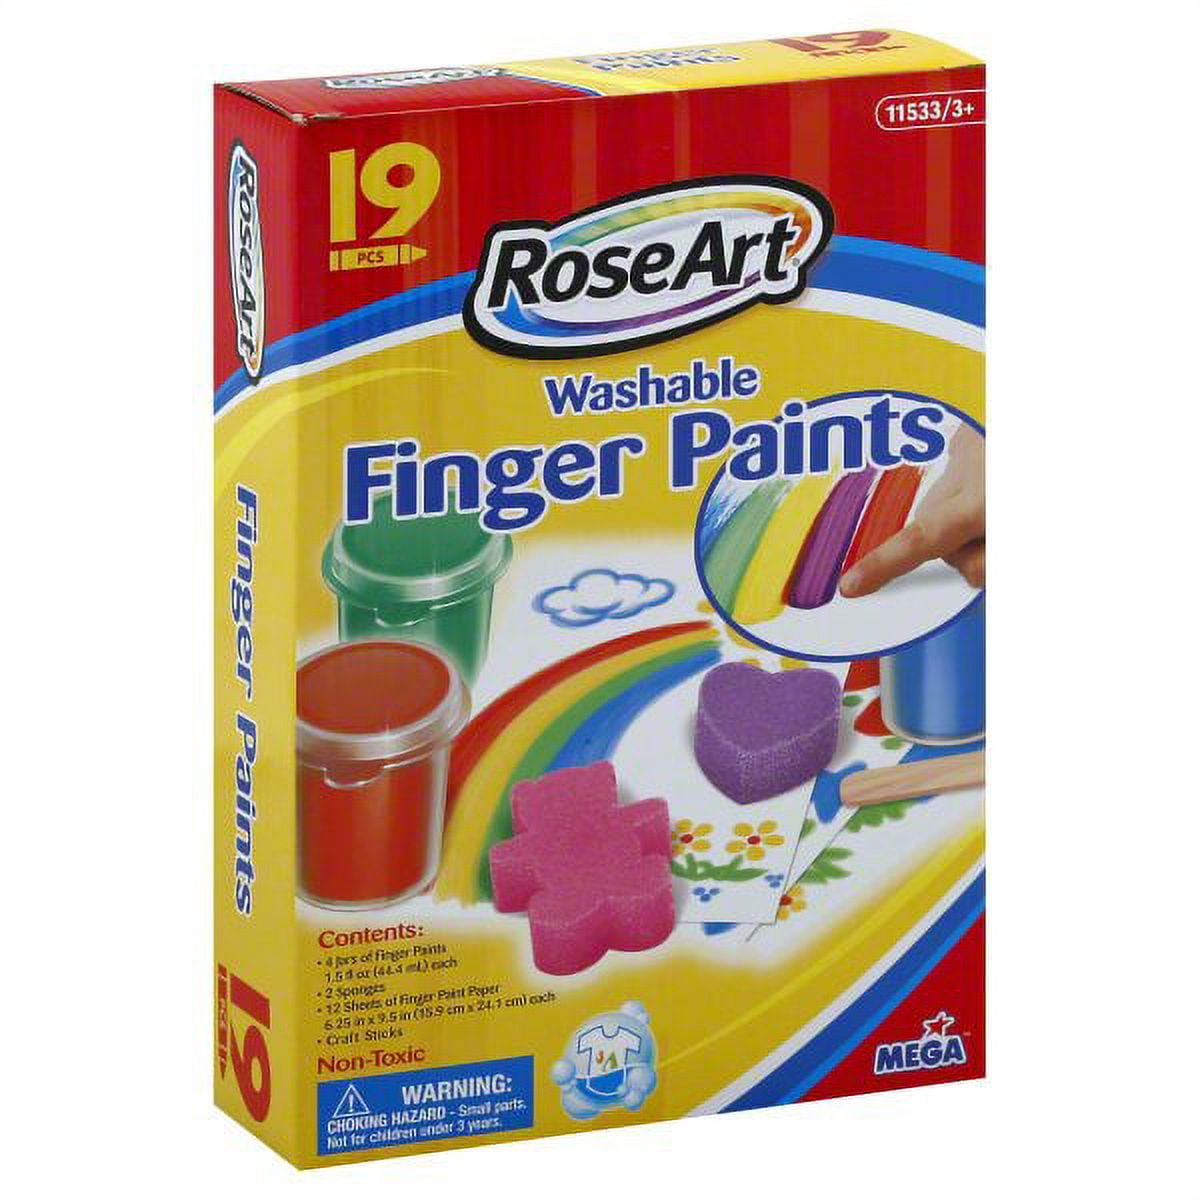 Handy Art by Rock Paint Washable Finger Paint, White, 16 oz - RPC241005, Rock Paint / Handy Art